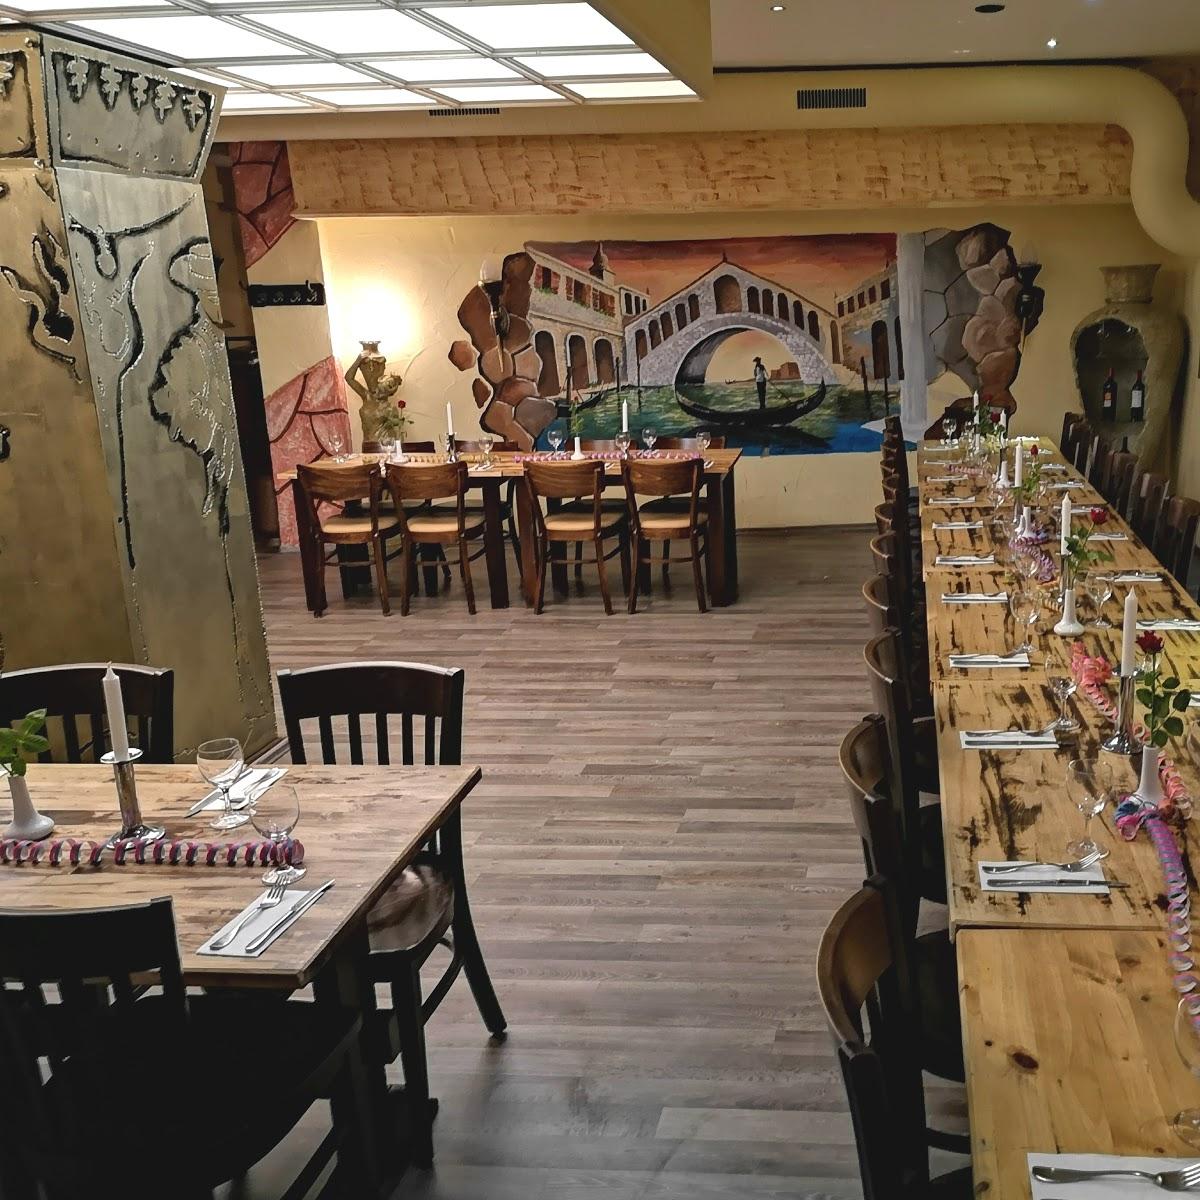 Restaurant "Bellisimo Cafe Restaurant" in Neuss